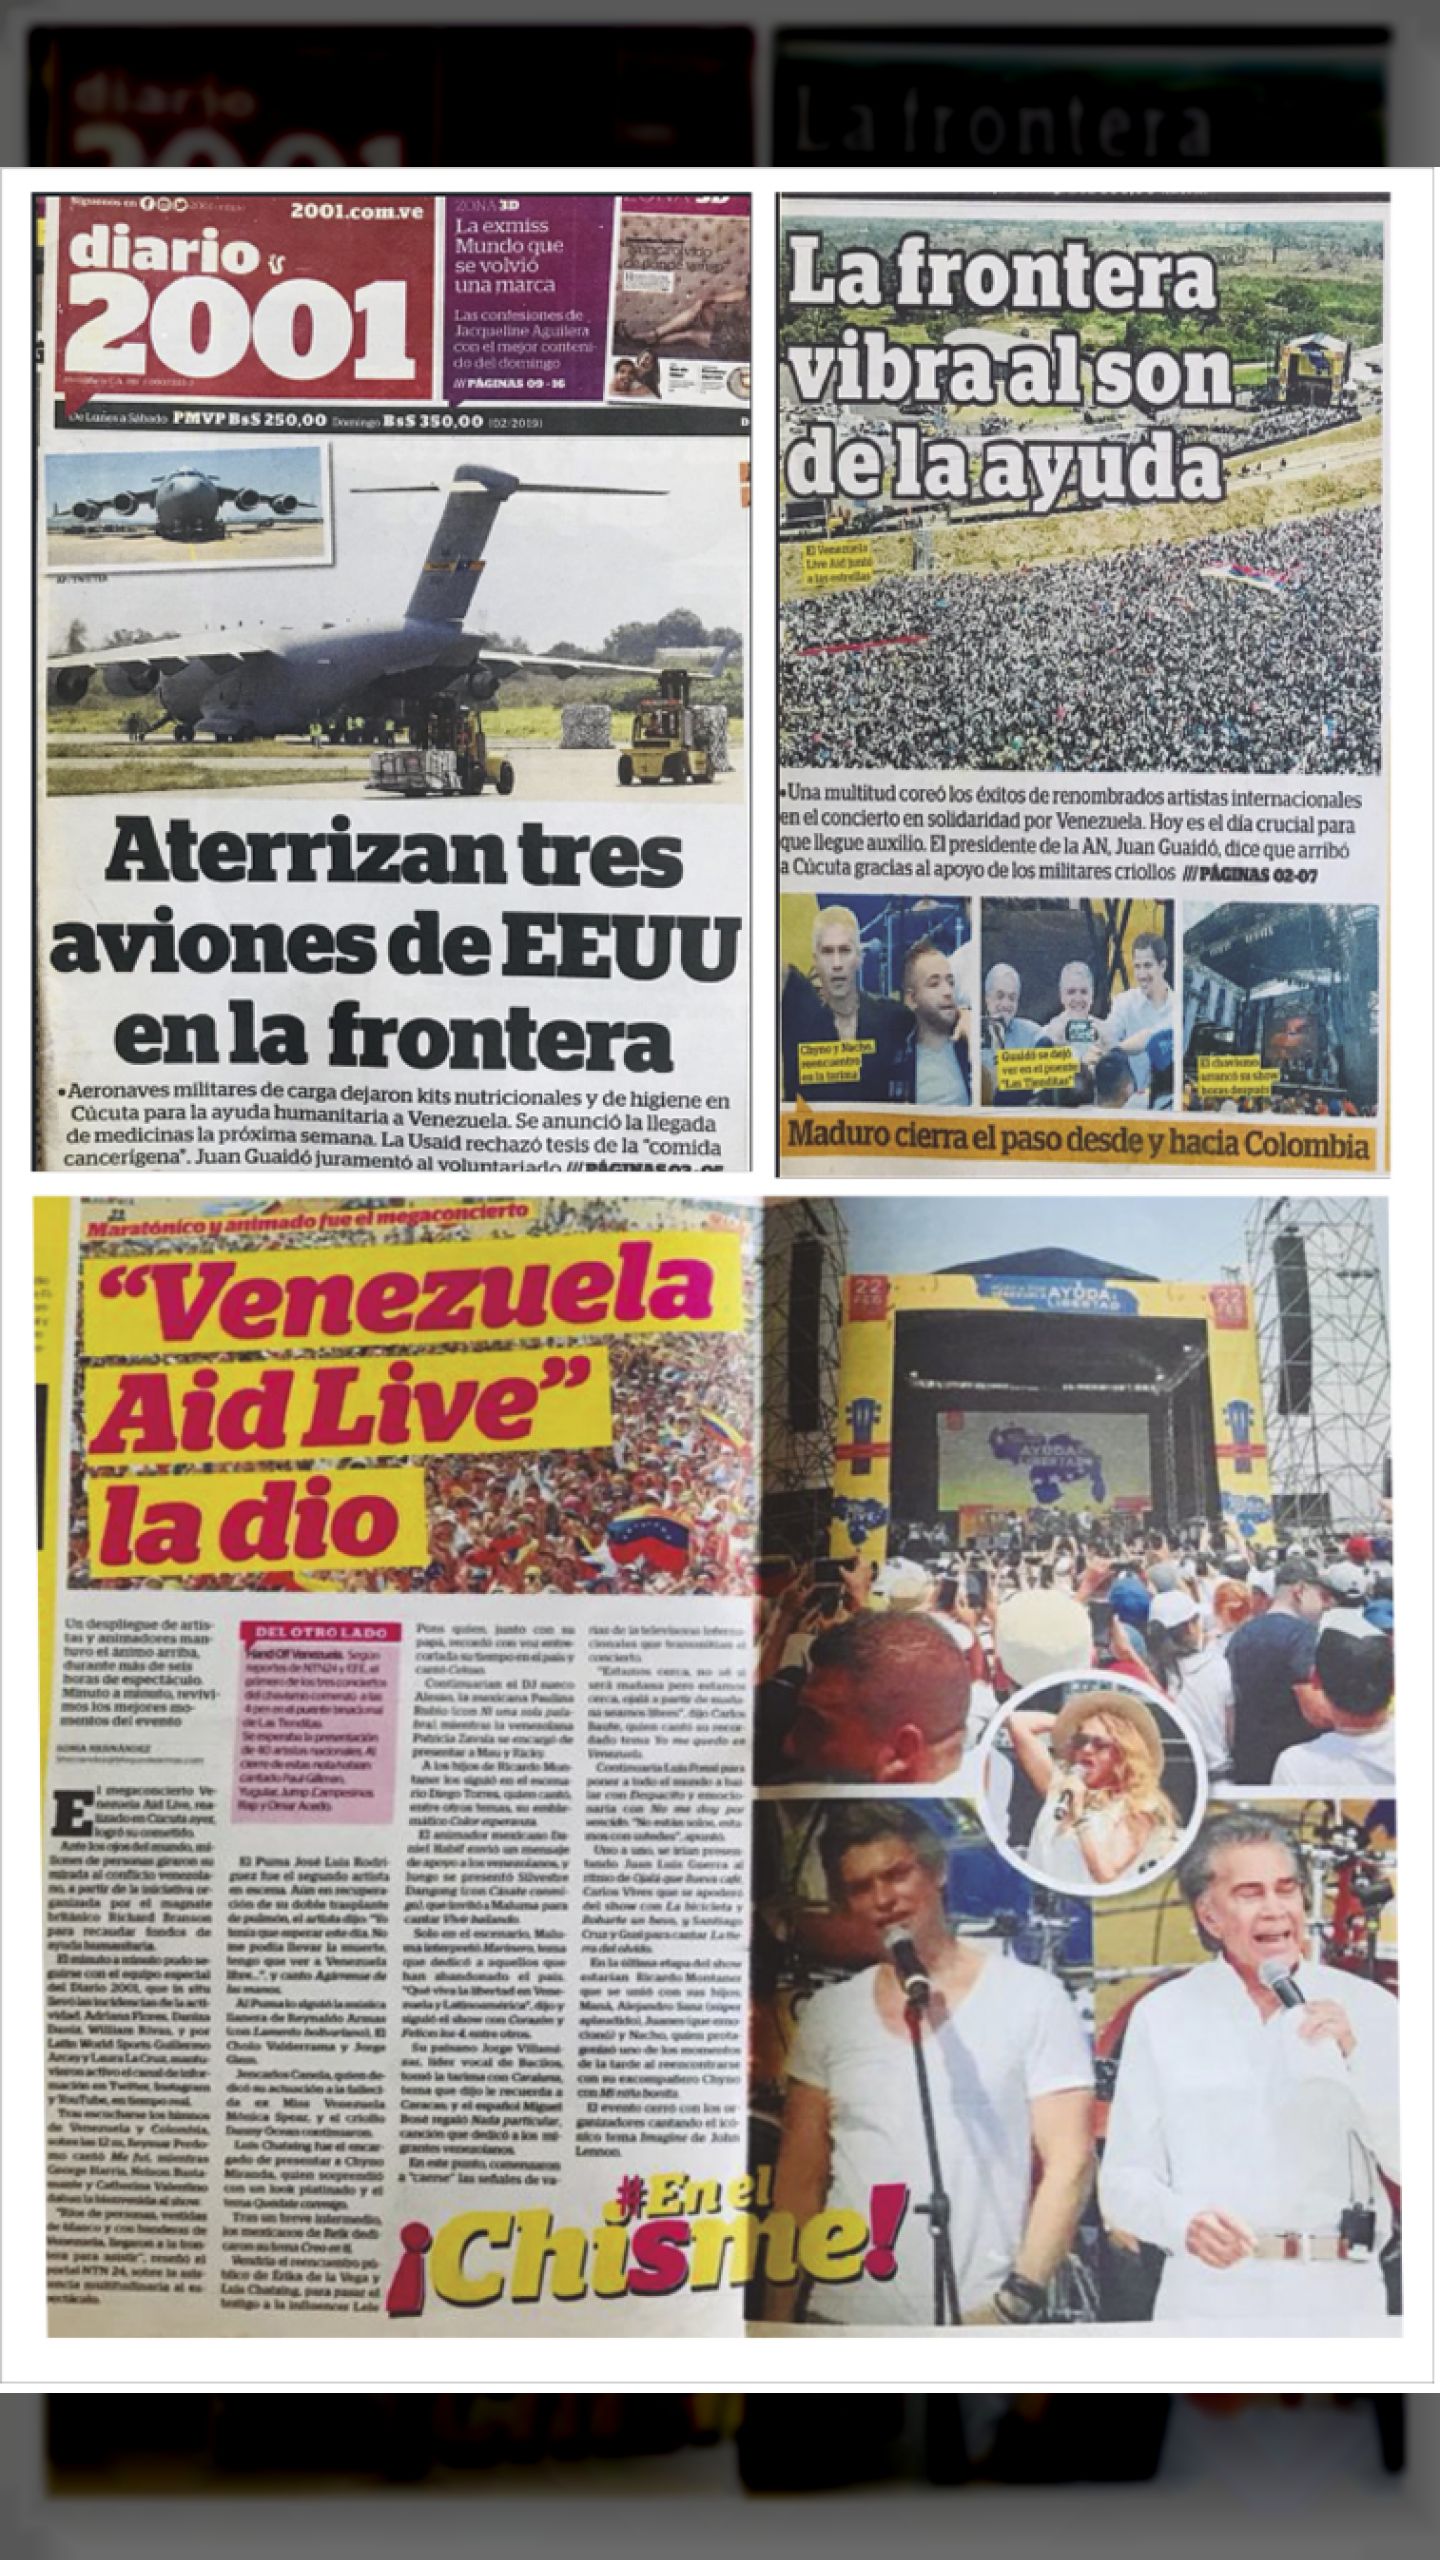 AID LIVE VENEZUELA: la agenda de invasión disfrazada de gran show  humanitario (2001, 23 de febrero de 2019)